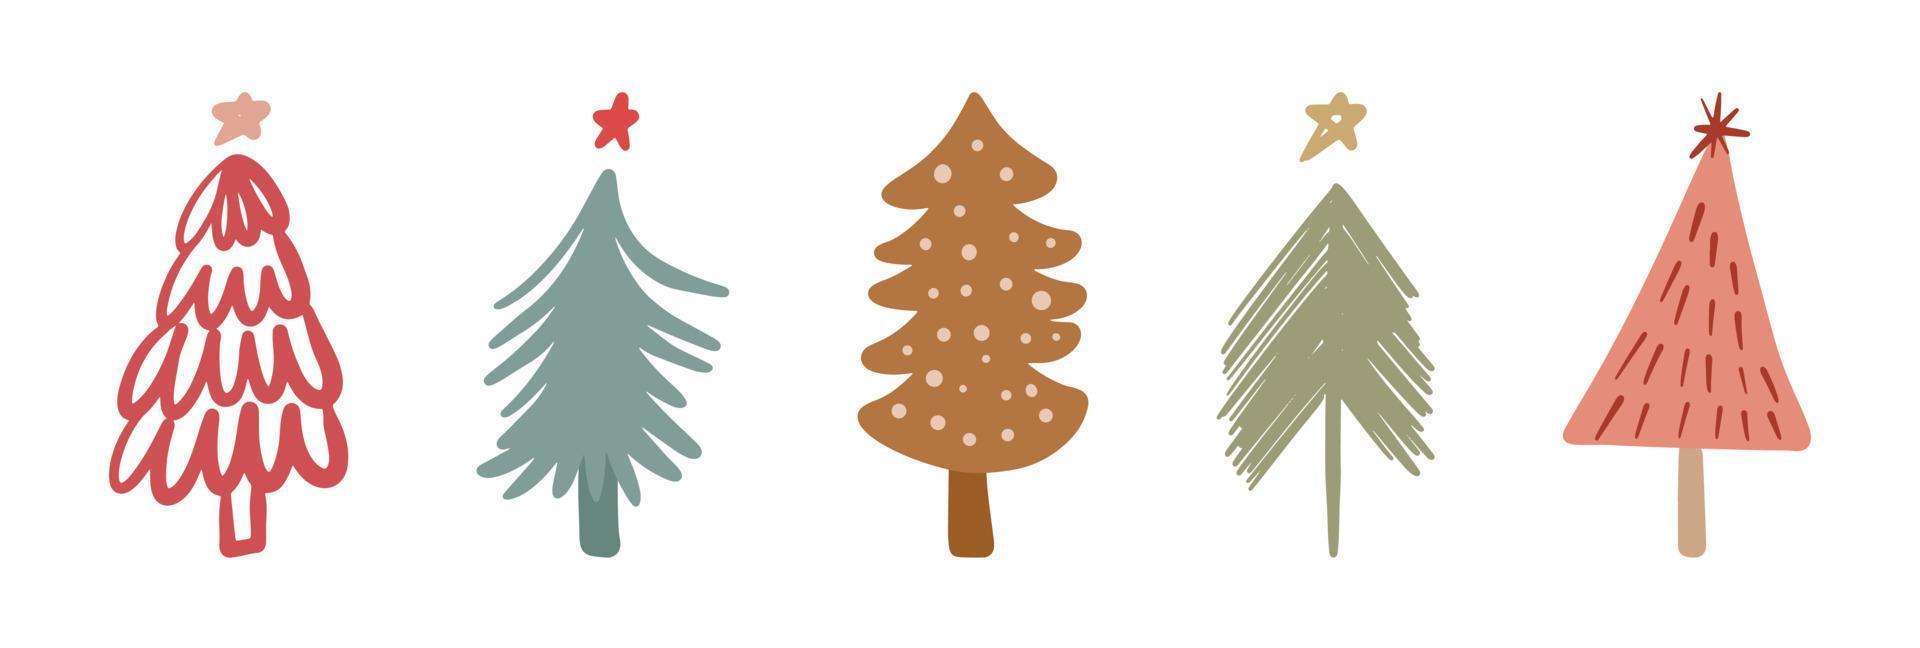 insieme di scarabocchi infantili disegnati a mano dell'albero di Natale minimalista semplice. festivo capodanno, collezione di elementi di design per le vacanze invernali vettore